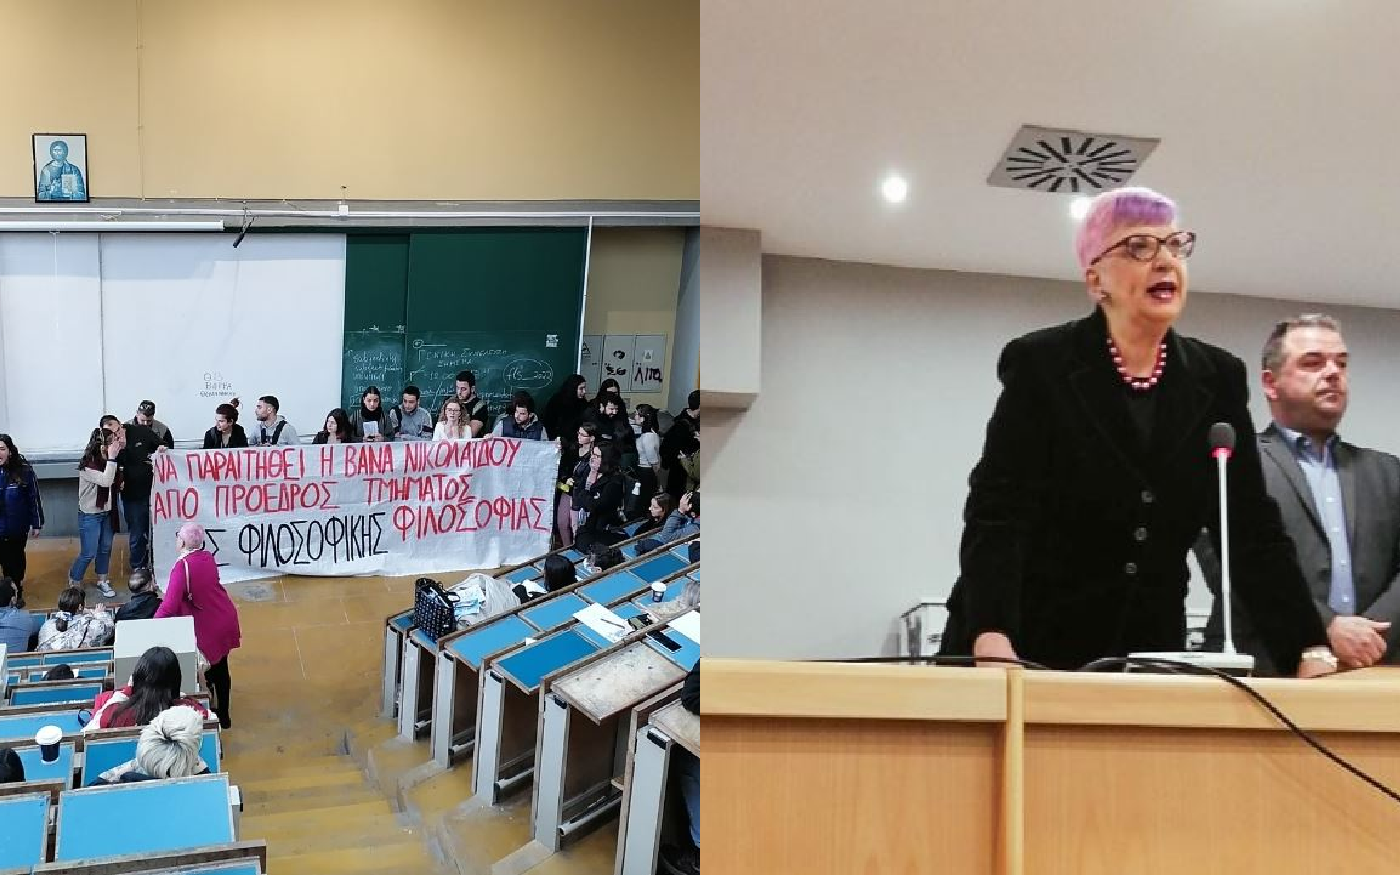 ΕΚΠΑ: Μηνύματα συμπαράστασης στην καθηγήτρια Βάνα Νικολαΐδου που δέχθηκε bullying – Συνάντηση με Κεραμέως